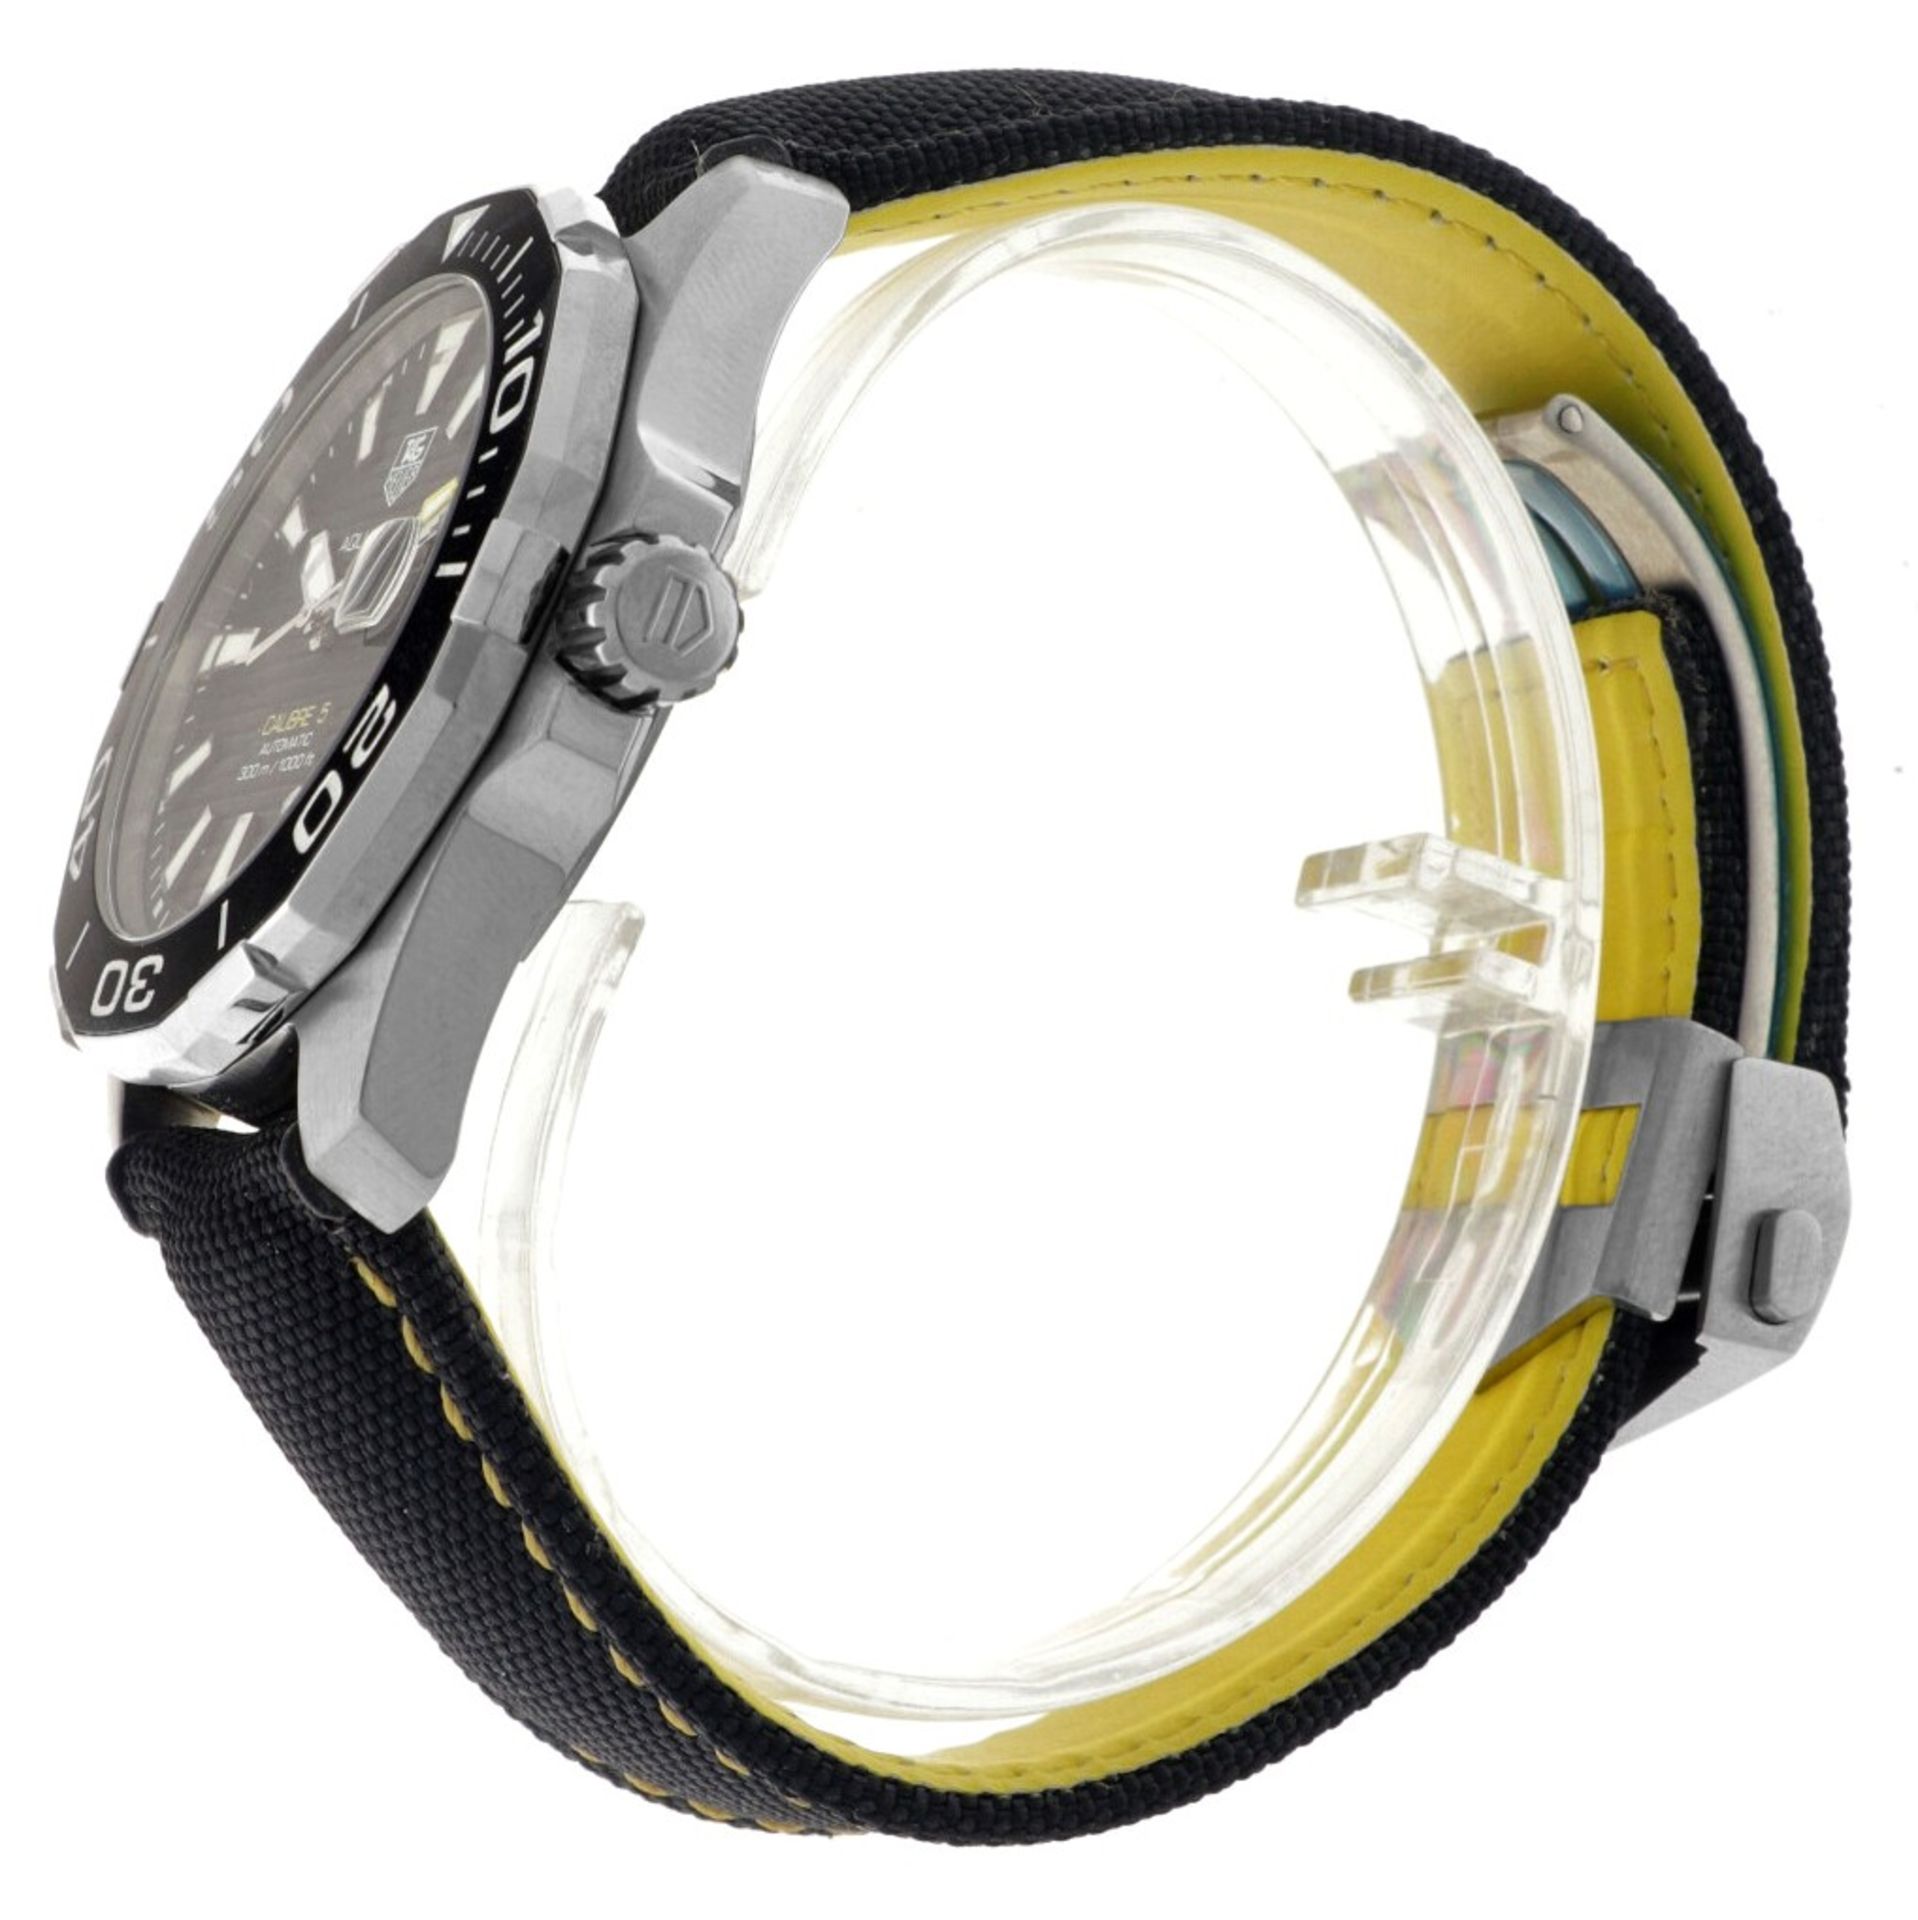 No Reserve - TAG Heuer Aquaracer 300M Calibre 5 WAY221A.FC6362 - Men's watch. - Image 5 of 6